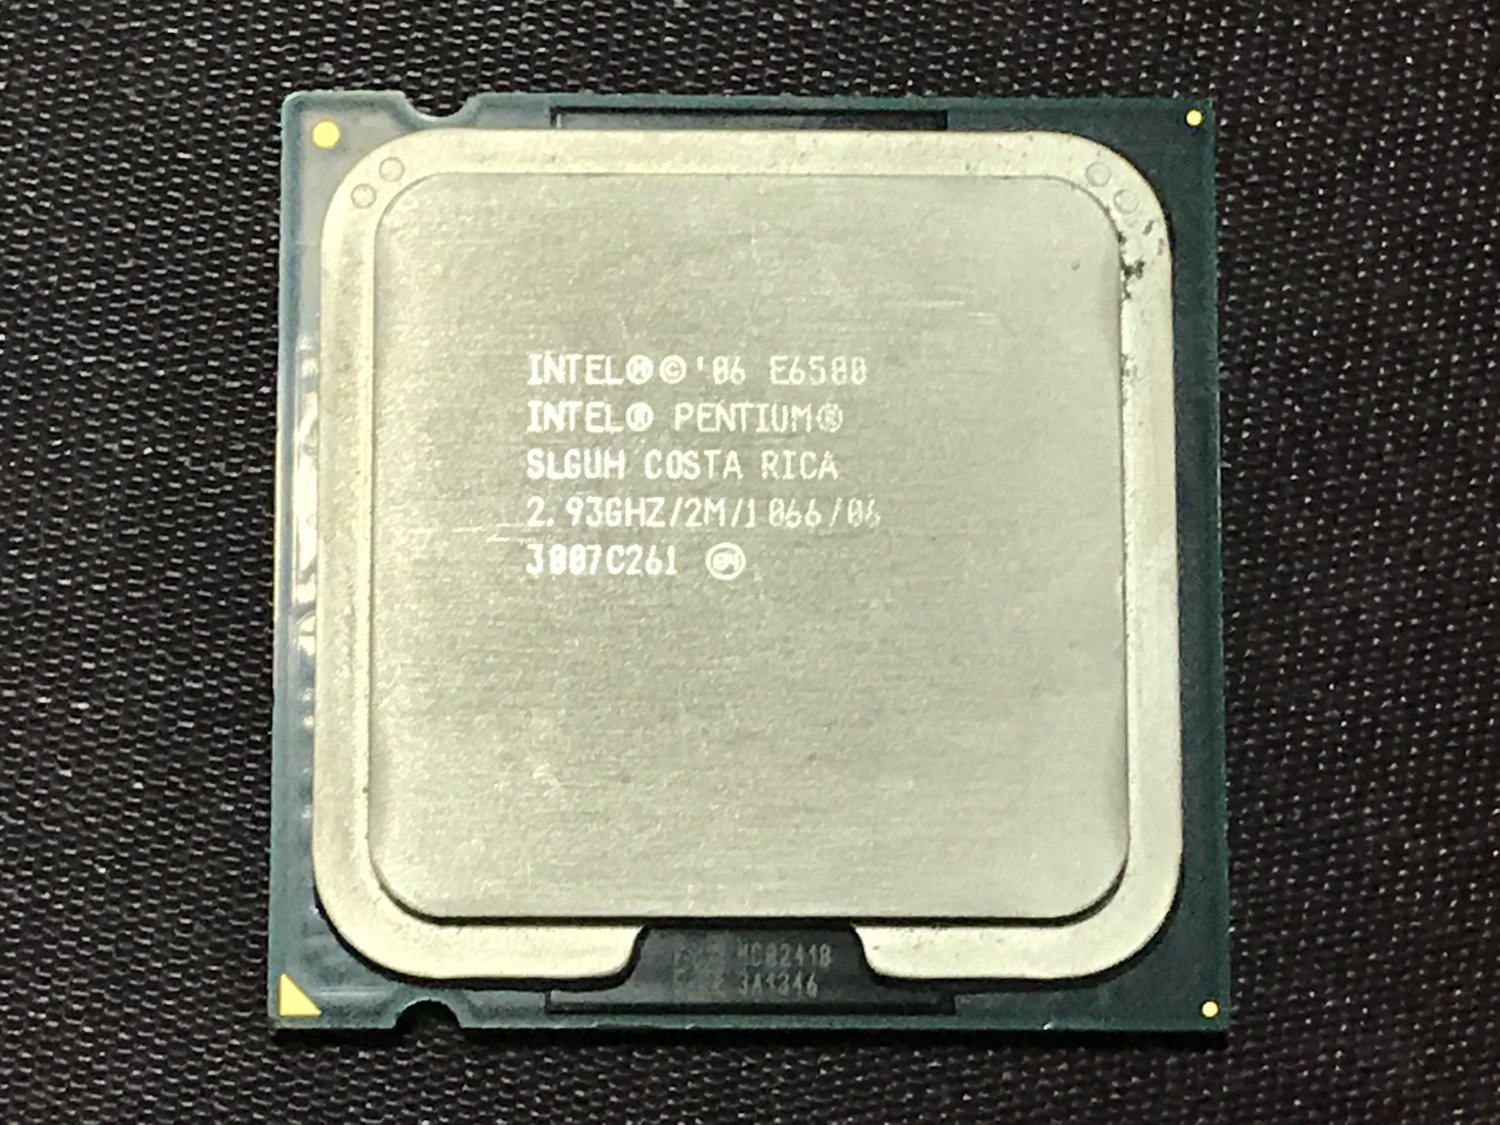 Intel costa rica. Процессор Intel Pentium e6500. Pentium r Dual-Core CPU e6500 2.93GHZ. Intel 86 e6500. E6500 Core 2 Duo Box.